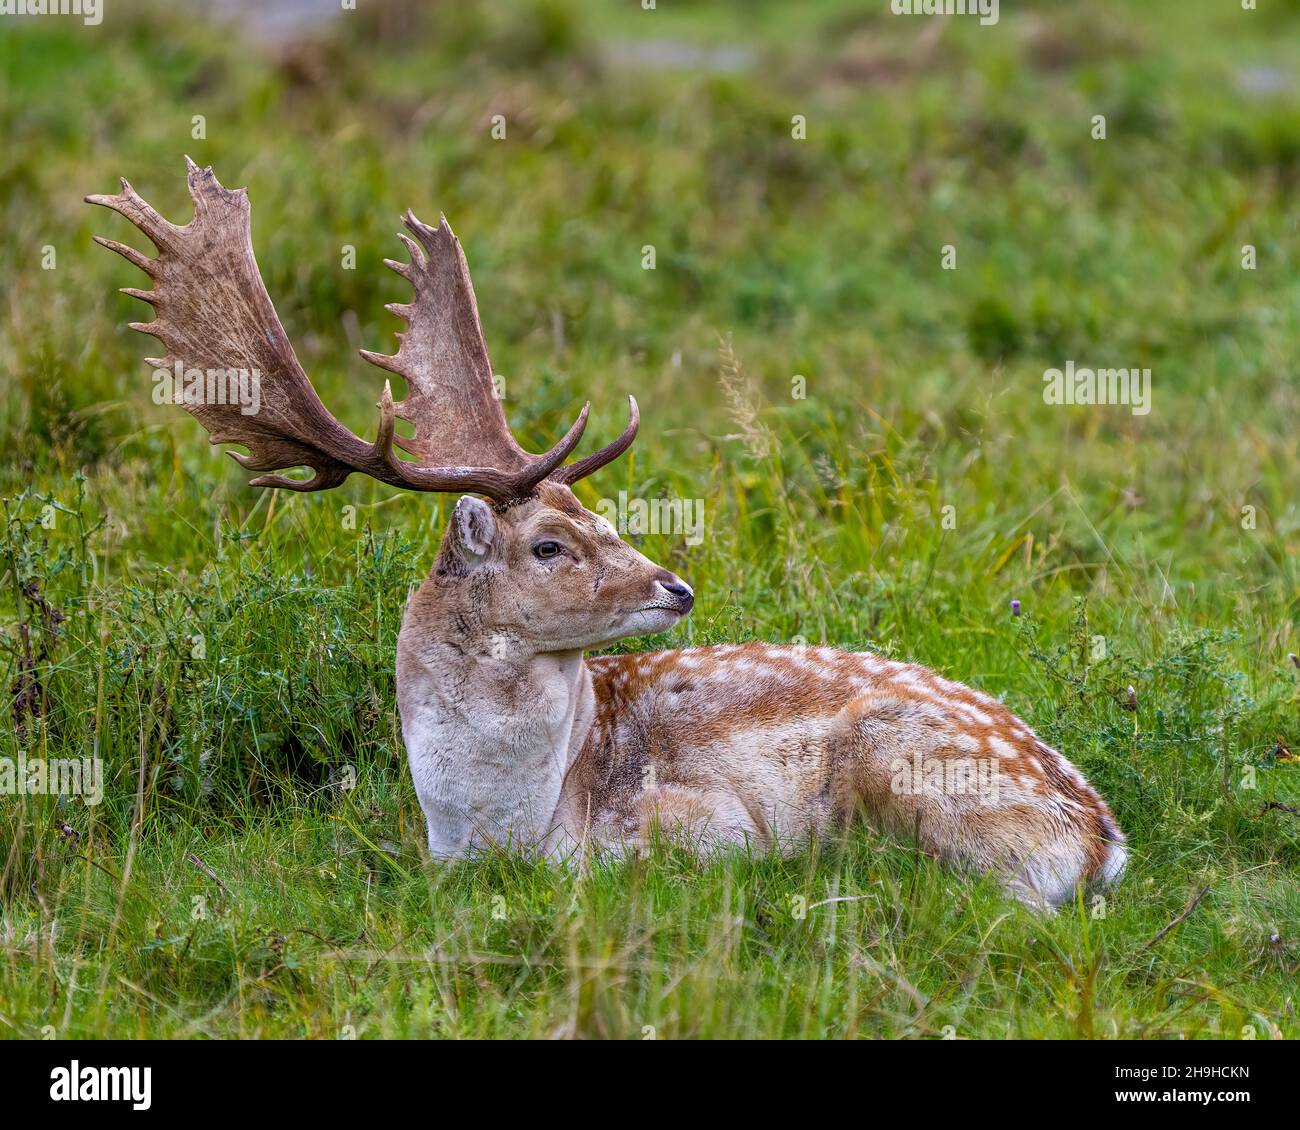 Il cervo maschio di Fallow si trova in primo piano e riposa in campo con l'erba nel suo ambiente e habitat che circonda e mostra grandi corna. Foto e immagine del cervo. Foto Stock